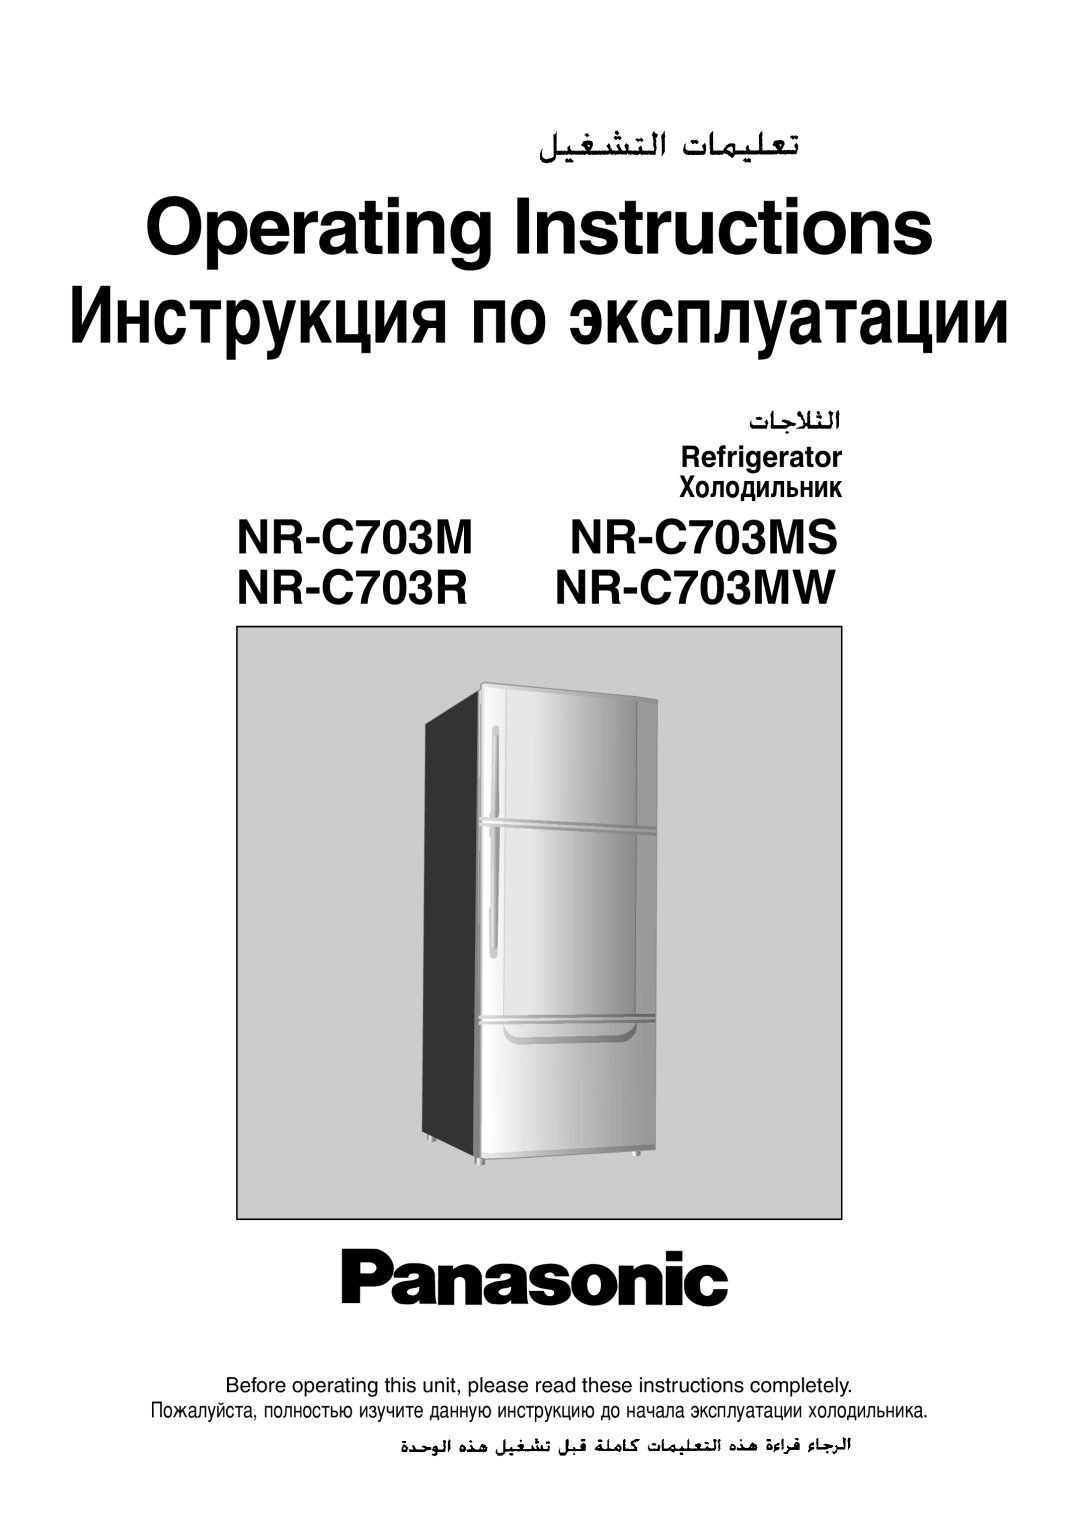 Panasonic NR-C703MW operating instructions Operating Instructions, àÌÒÚÛÍˆËﬂ ÔÓ ˝ÍÒÔÎÛ‡Ú‡ˆËË, Refrigerator, ïÓÎÓ‰ËÎ¸ÌËÍ 